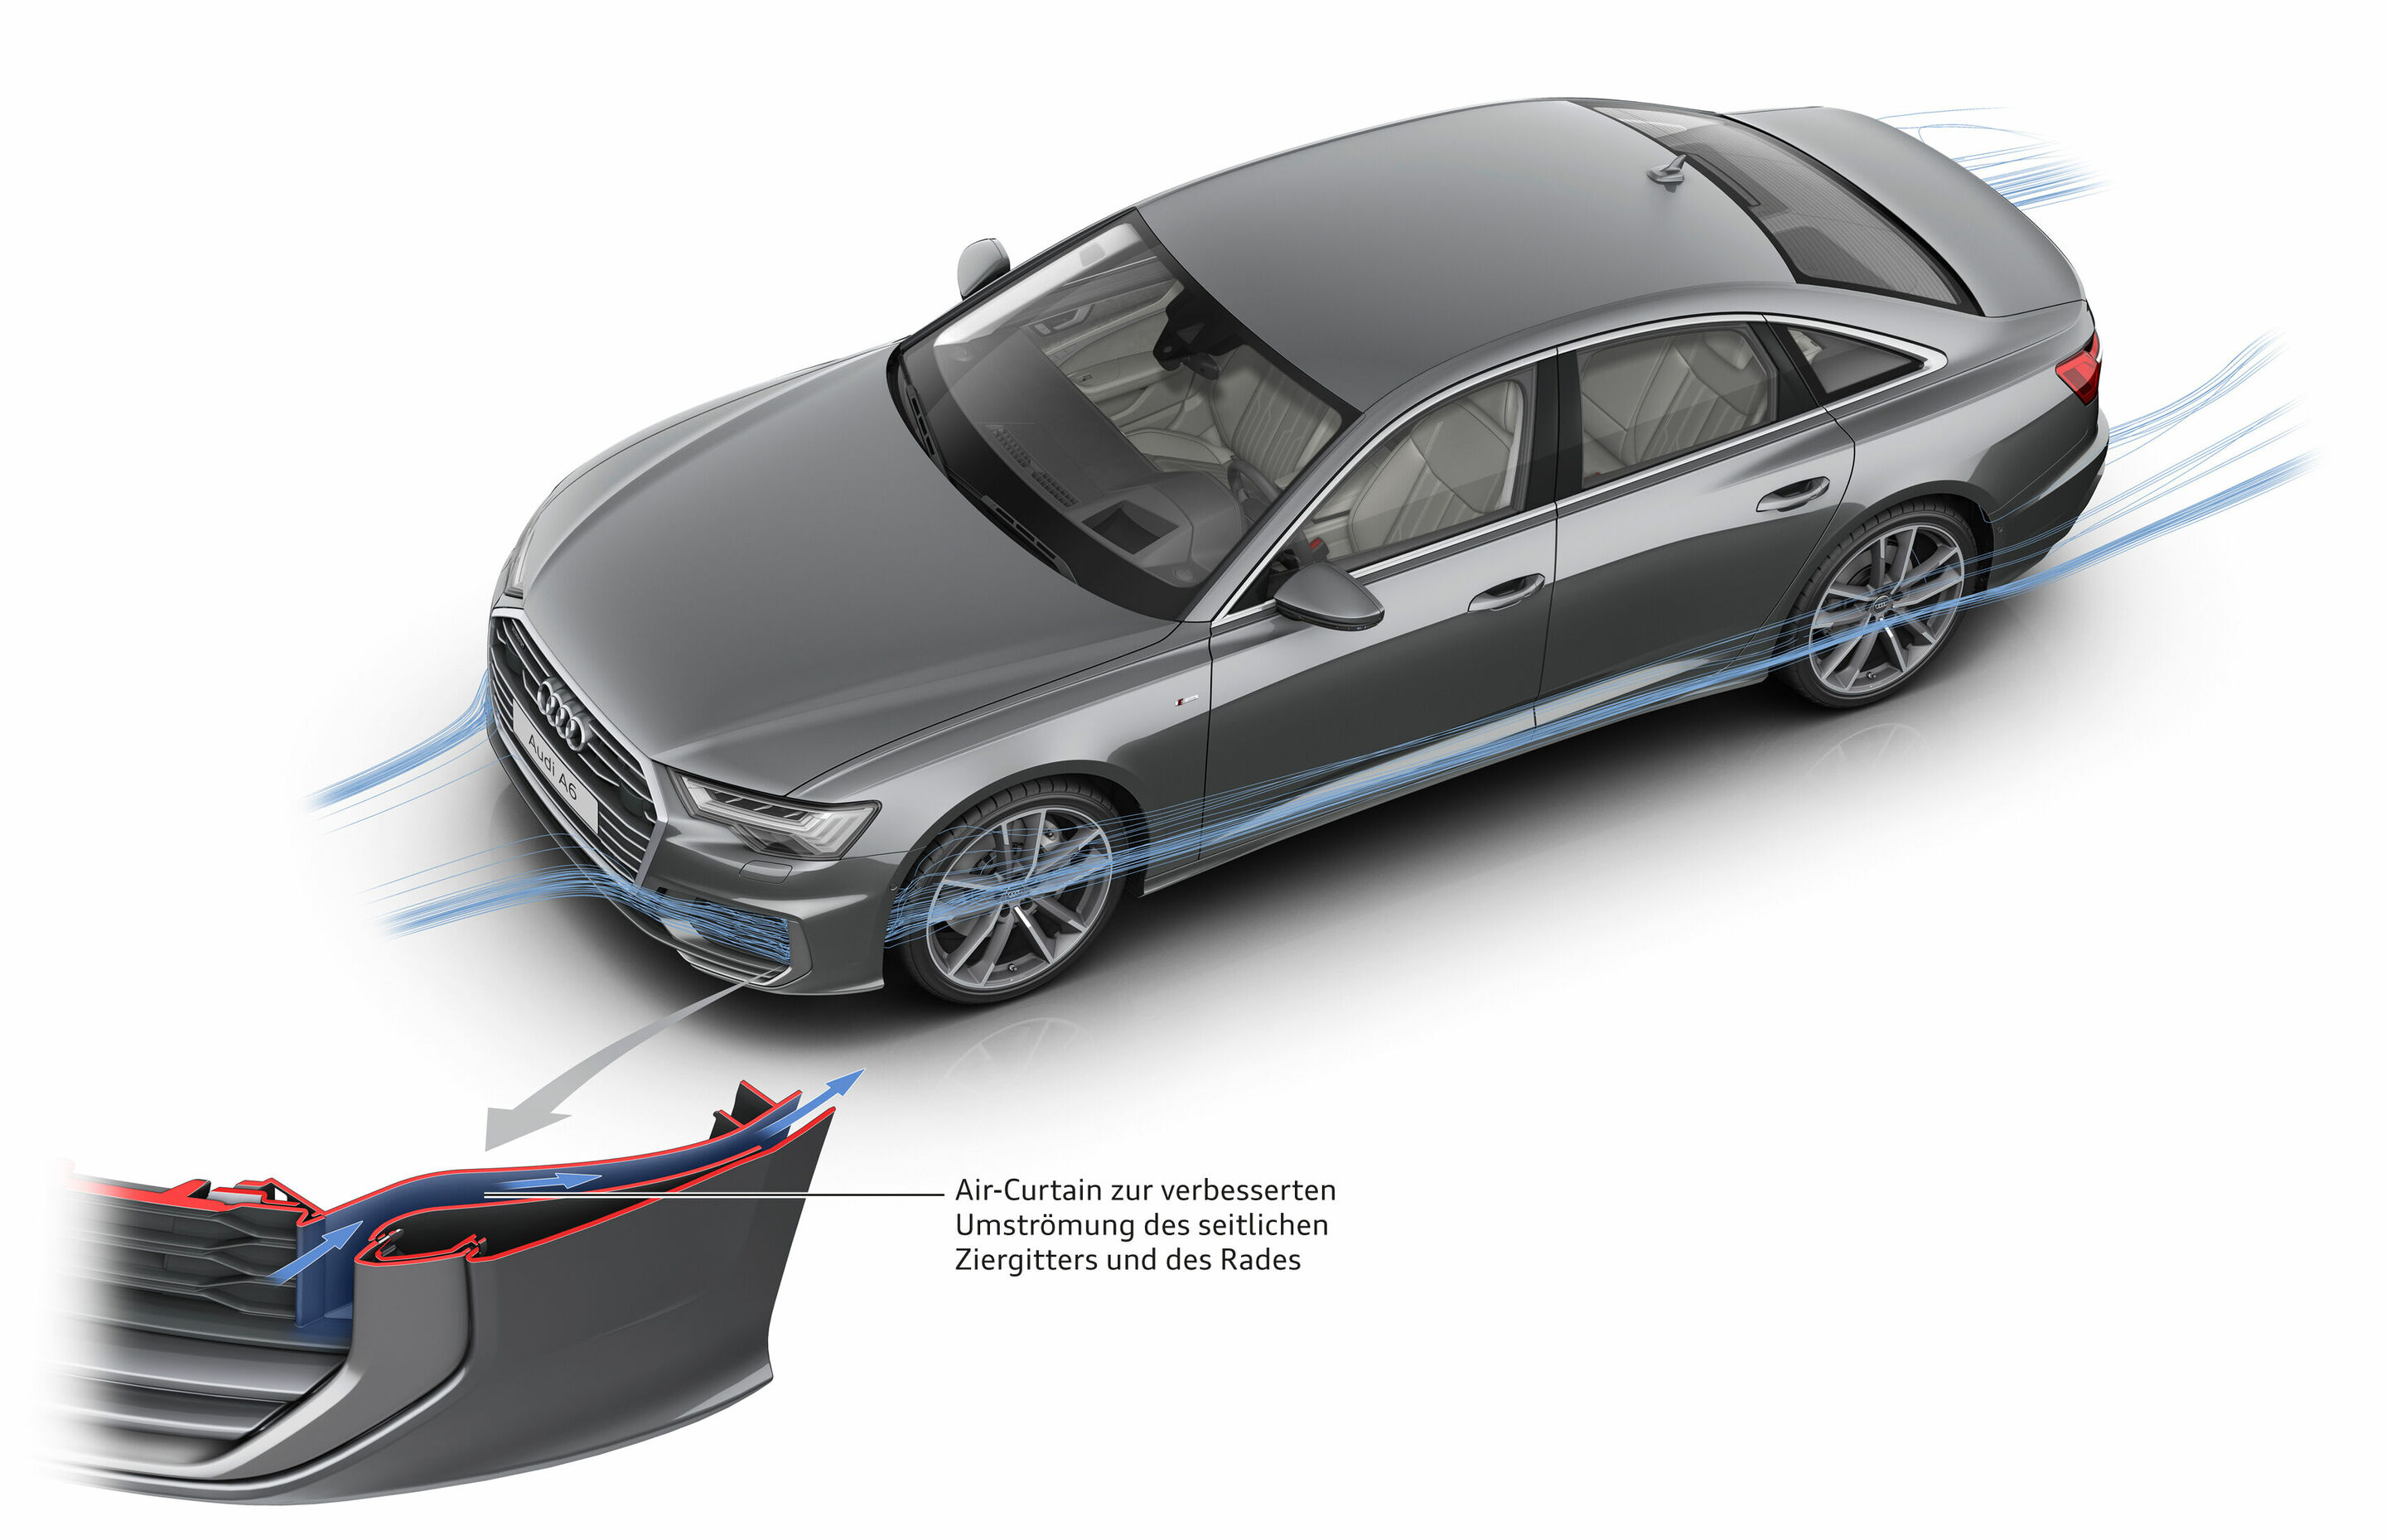 Audi A6 (C7) - Technische Daten zu allen Motorisierungen